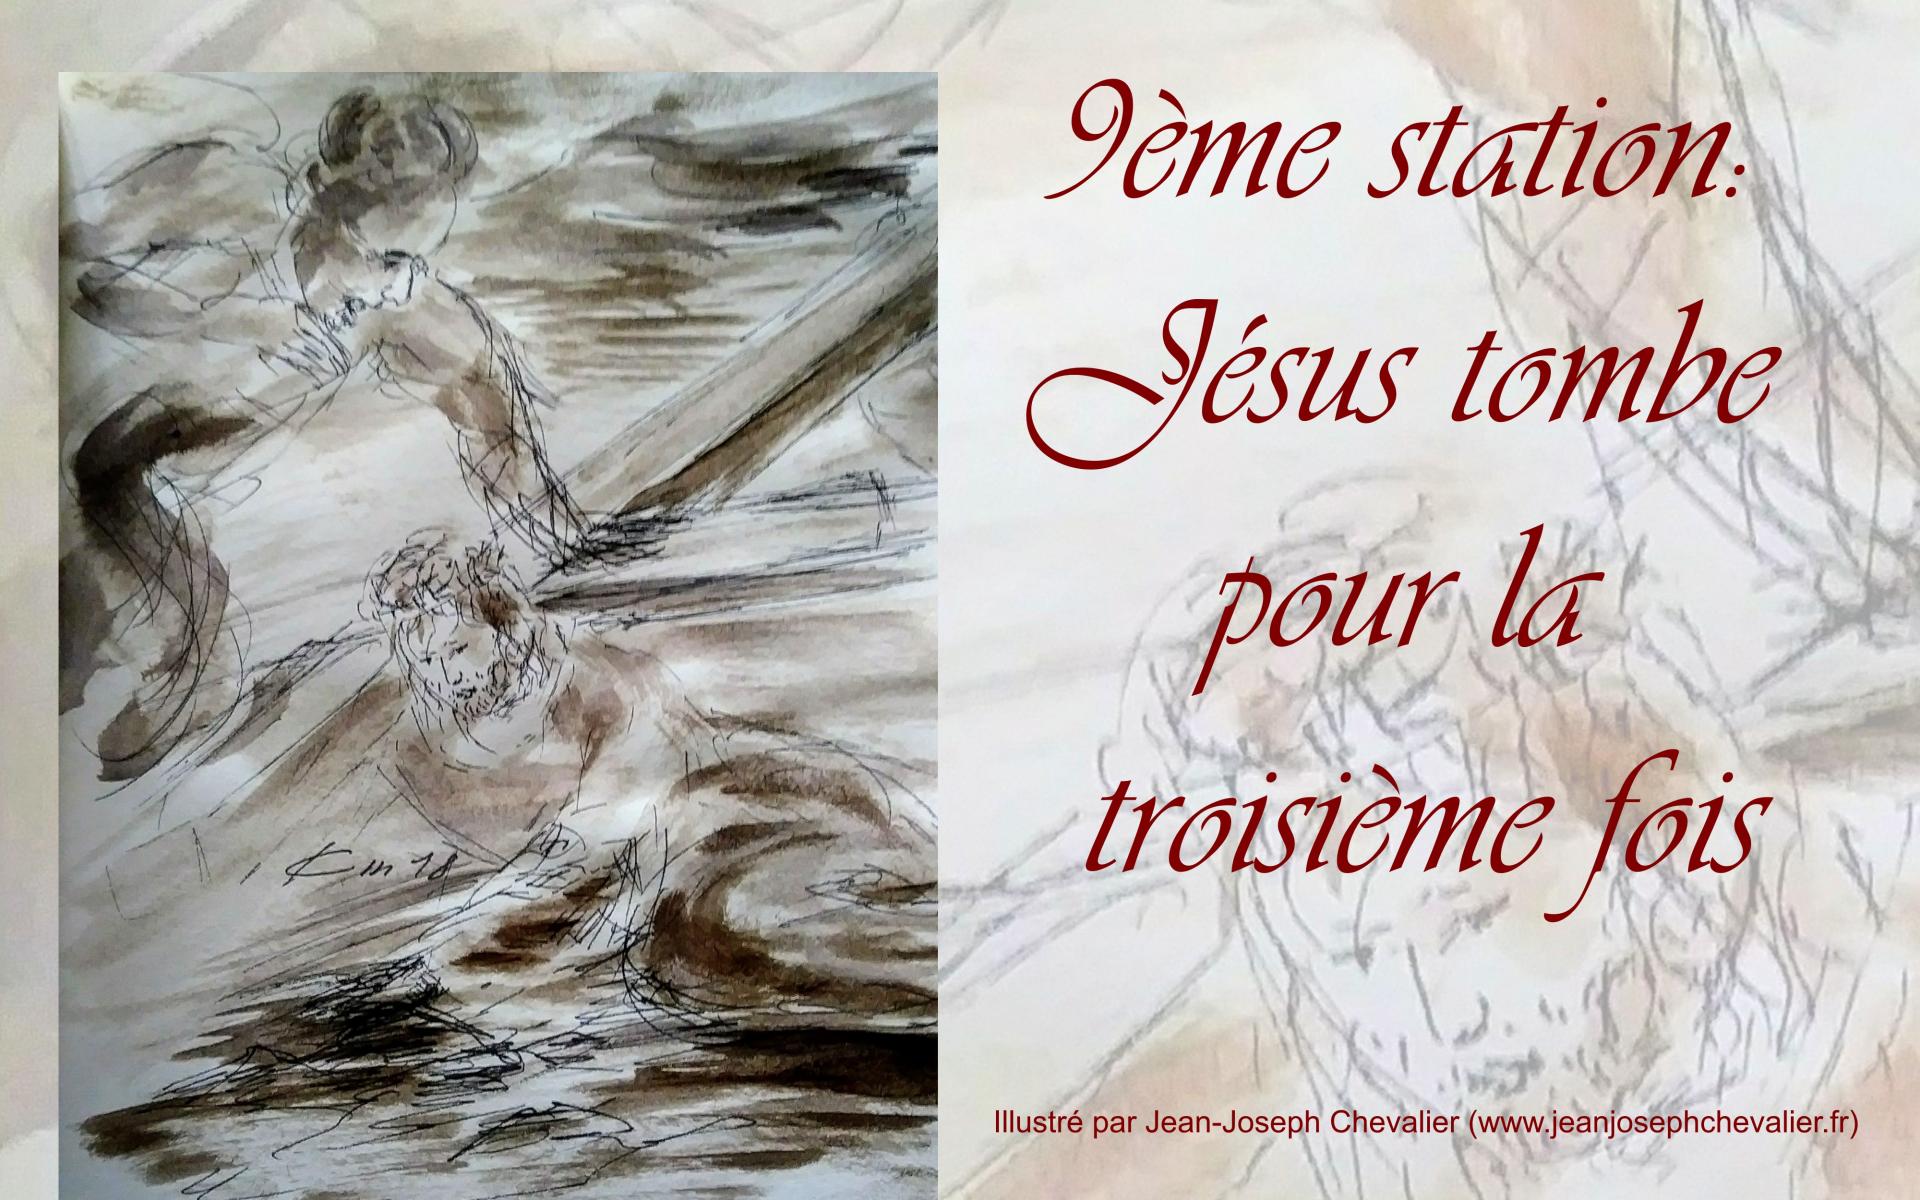 9 chemin de croix neuvieme station jesus tombe pour la troisieme fois dessin au lavis de jean joseph chevalier ix